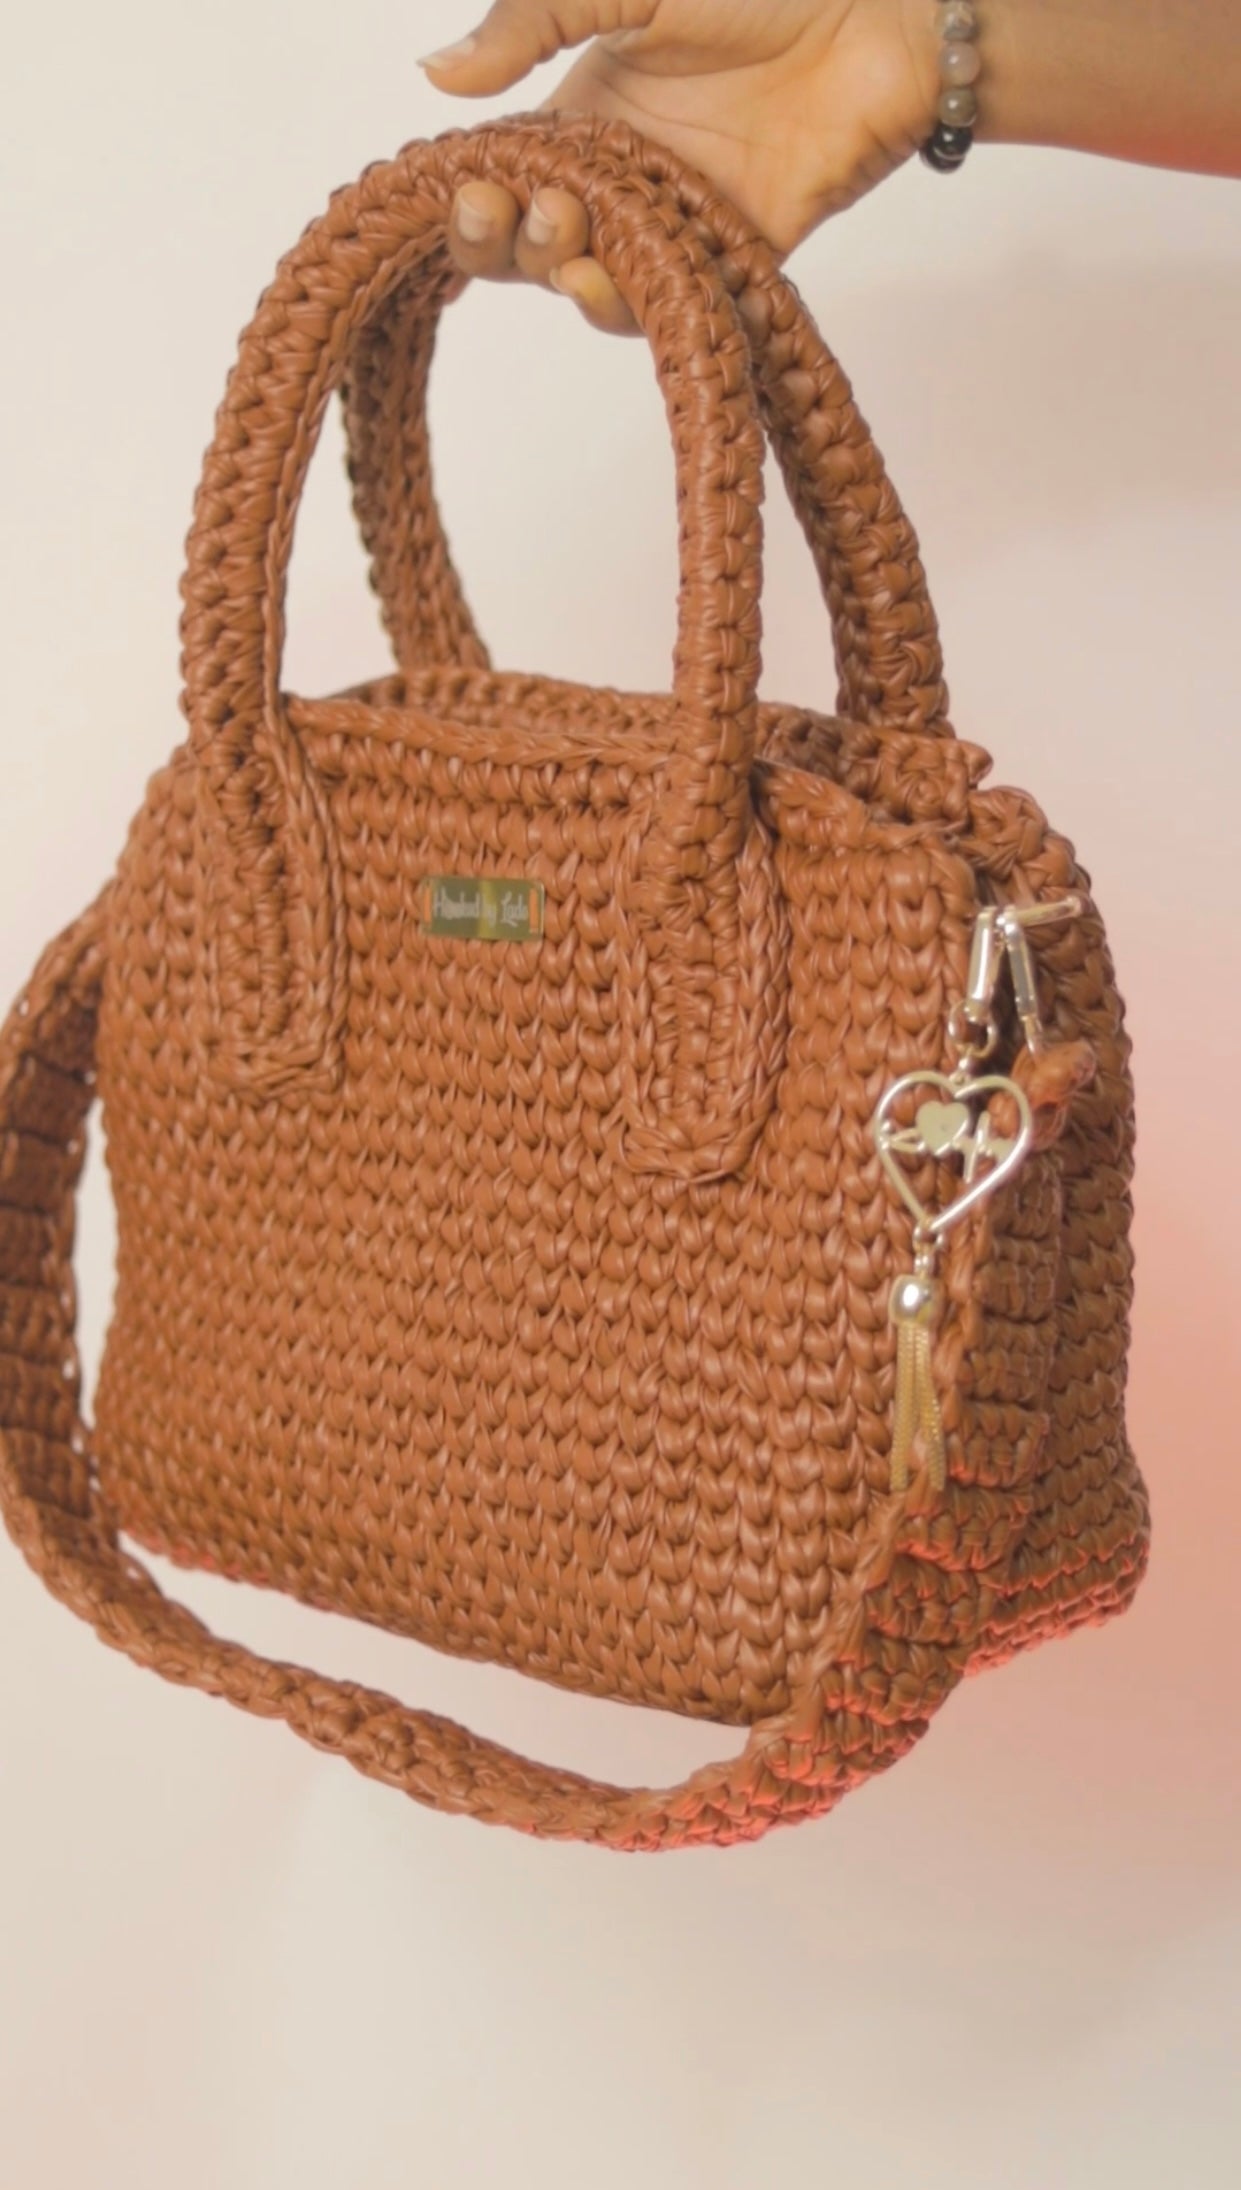 ‘Posi’ tote Crochet Bag in Tan (medium)